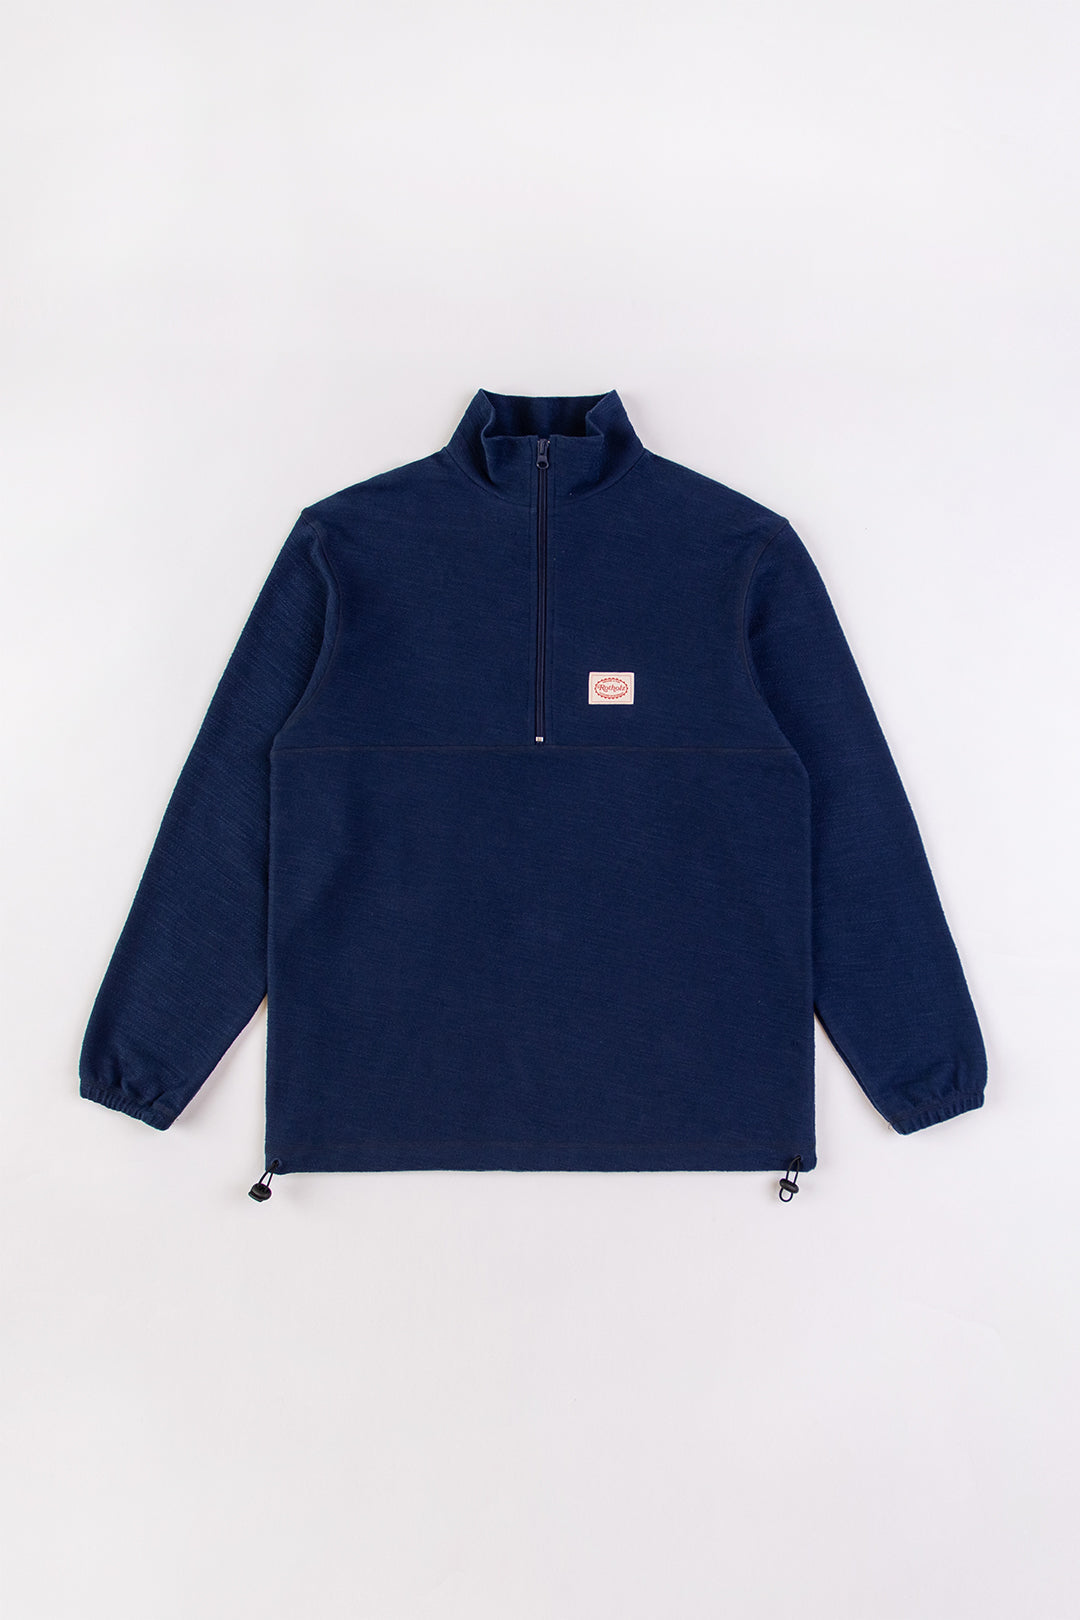 Dunkel-blaues Reissverschluss-Sweatshirt Divided 100% Baumwolle von Rotholz